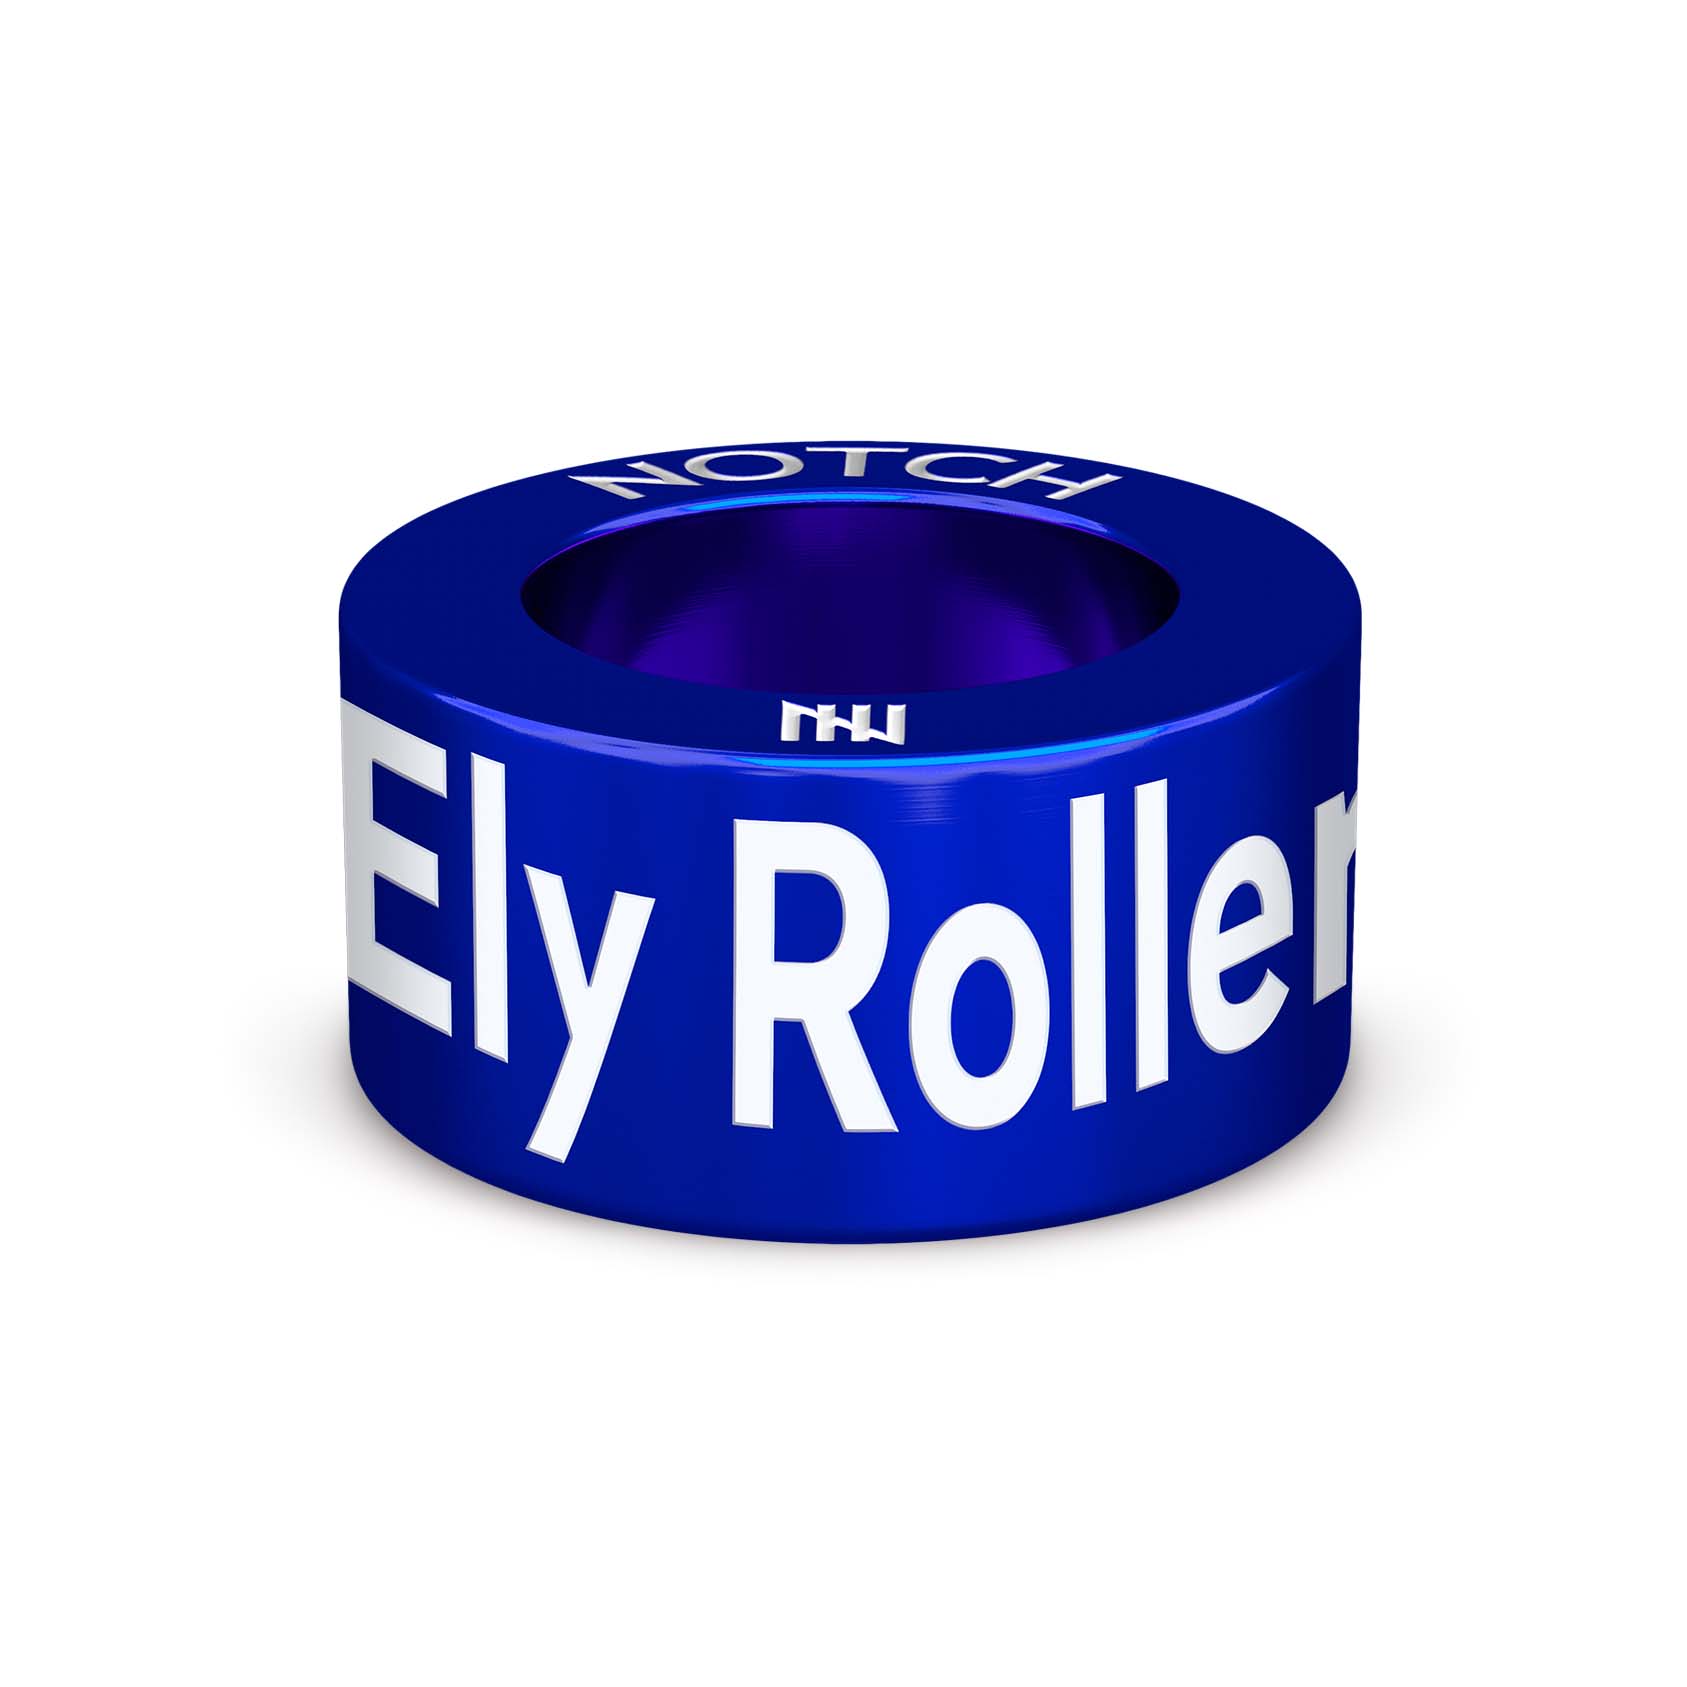 Ely Roller Skating Club NOTCH Charm